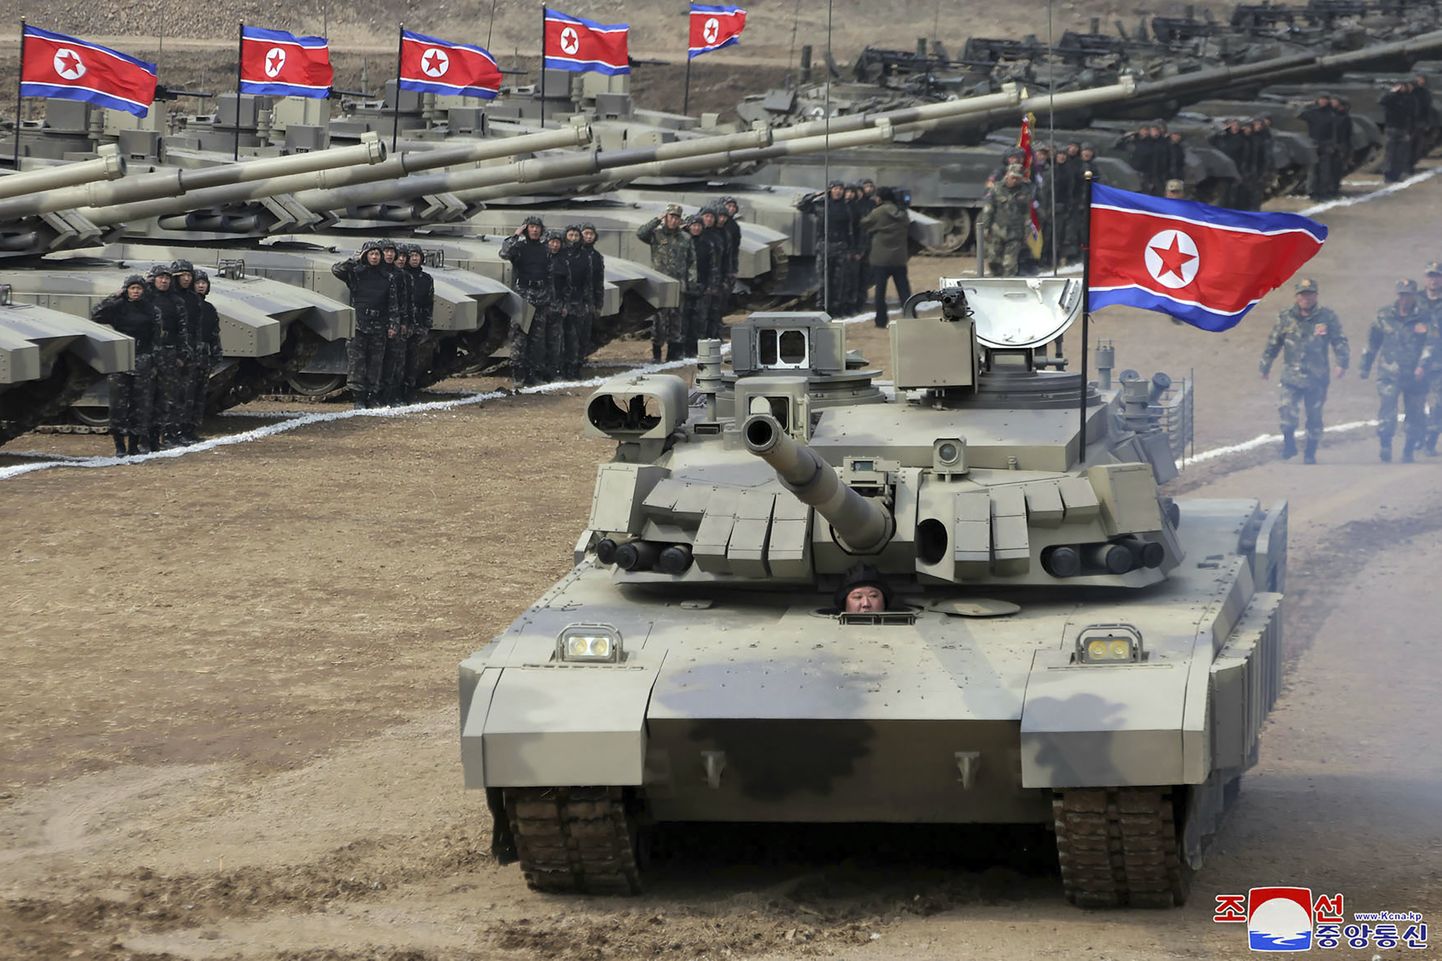 KCNA jagatud fotol on näha, et Põhja-Korea liider Kim Jong Un isiklikult juhib riigi uusimat lahingutanki.